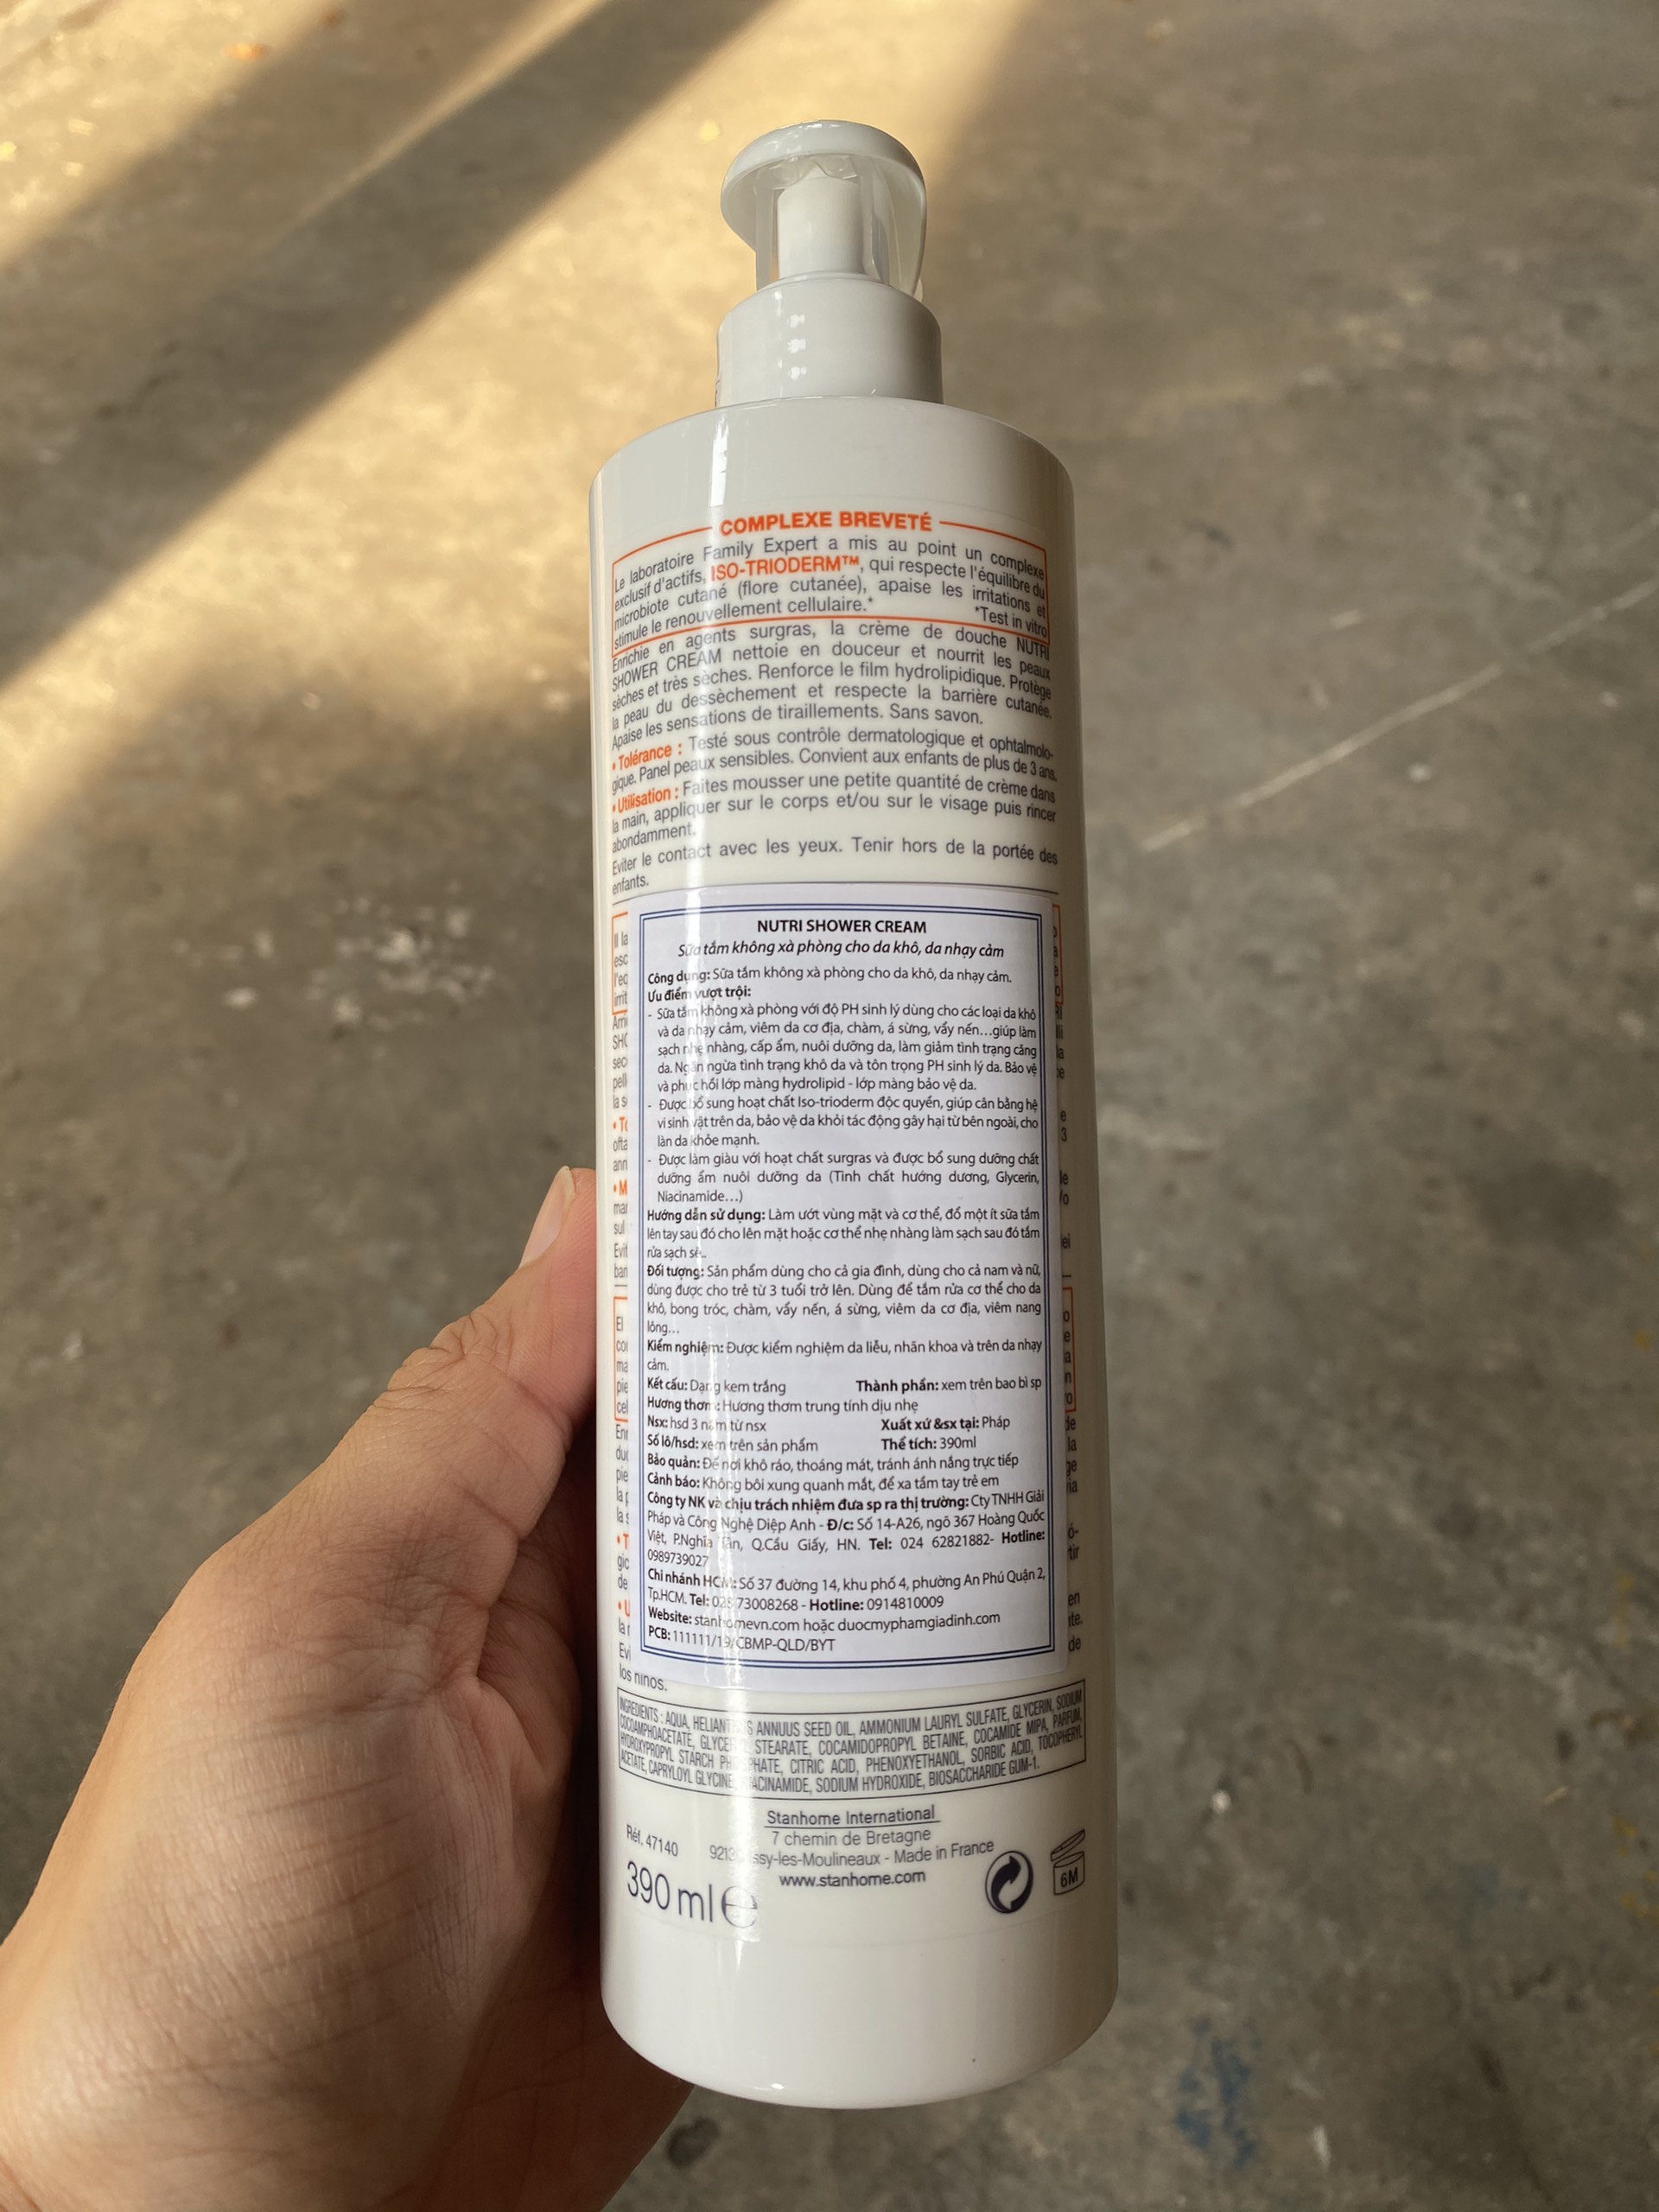 Sữa tắm STANHOME FAMILY EXPERT Nutri Shower Cream 390ml - dành cho da khô, nhạy cảm, kích ứng